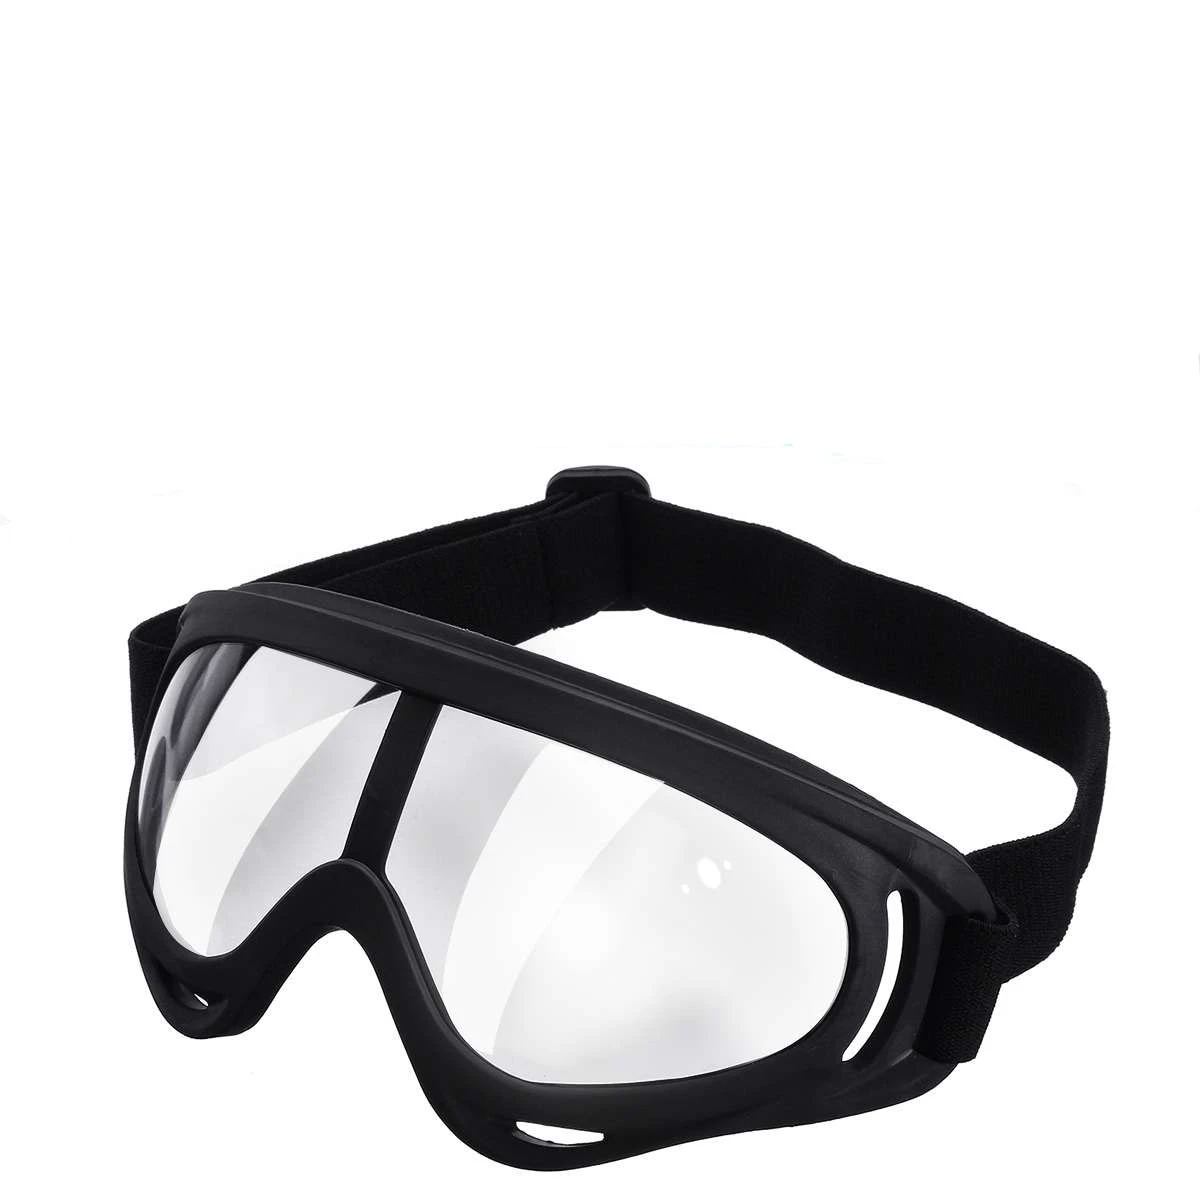 Pieza de gafas de seguridad completamente cerradas, lentes transparentes,  gafas protectoras para ojos, antiniebla, luz UV, cebolla, sin lágrimas|Gafas  protectoras para cortar cebolla| - AliExpress